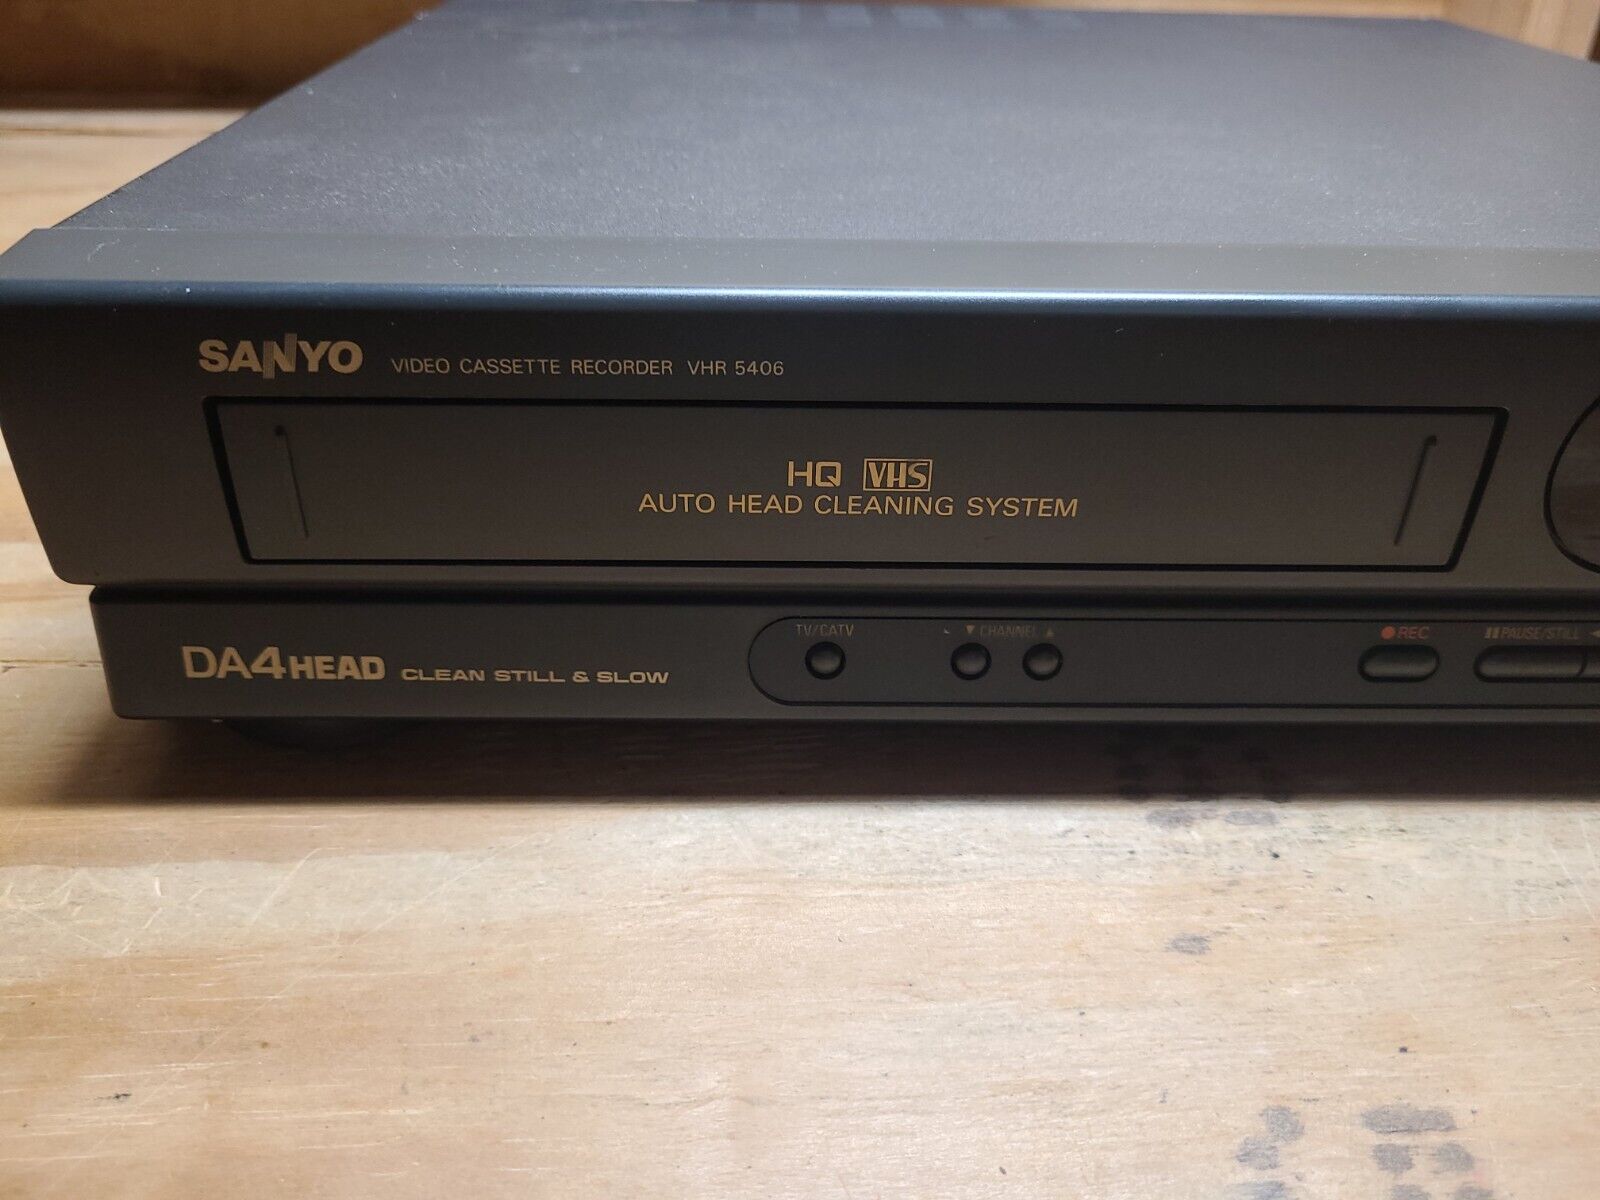 Видеомагнитофон Sanyo DA4HEAD модели VHR5406-произведён в Индонезии